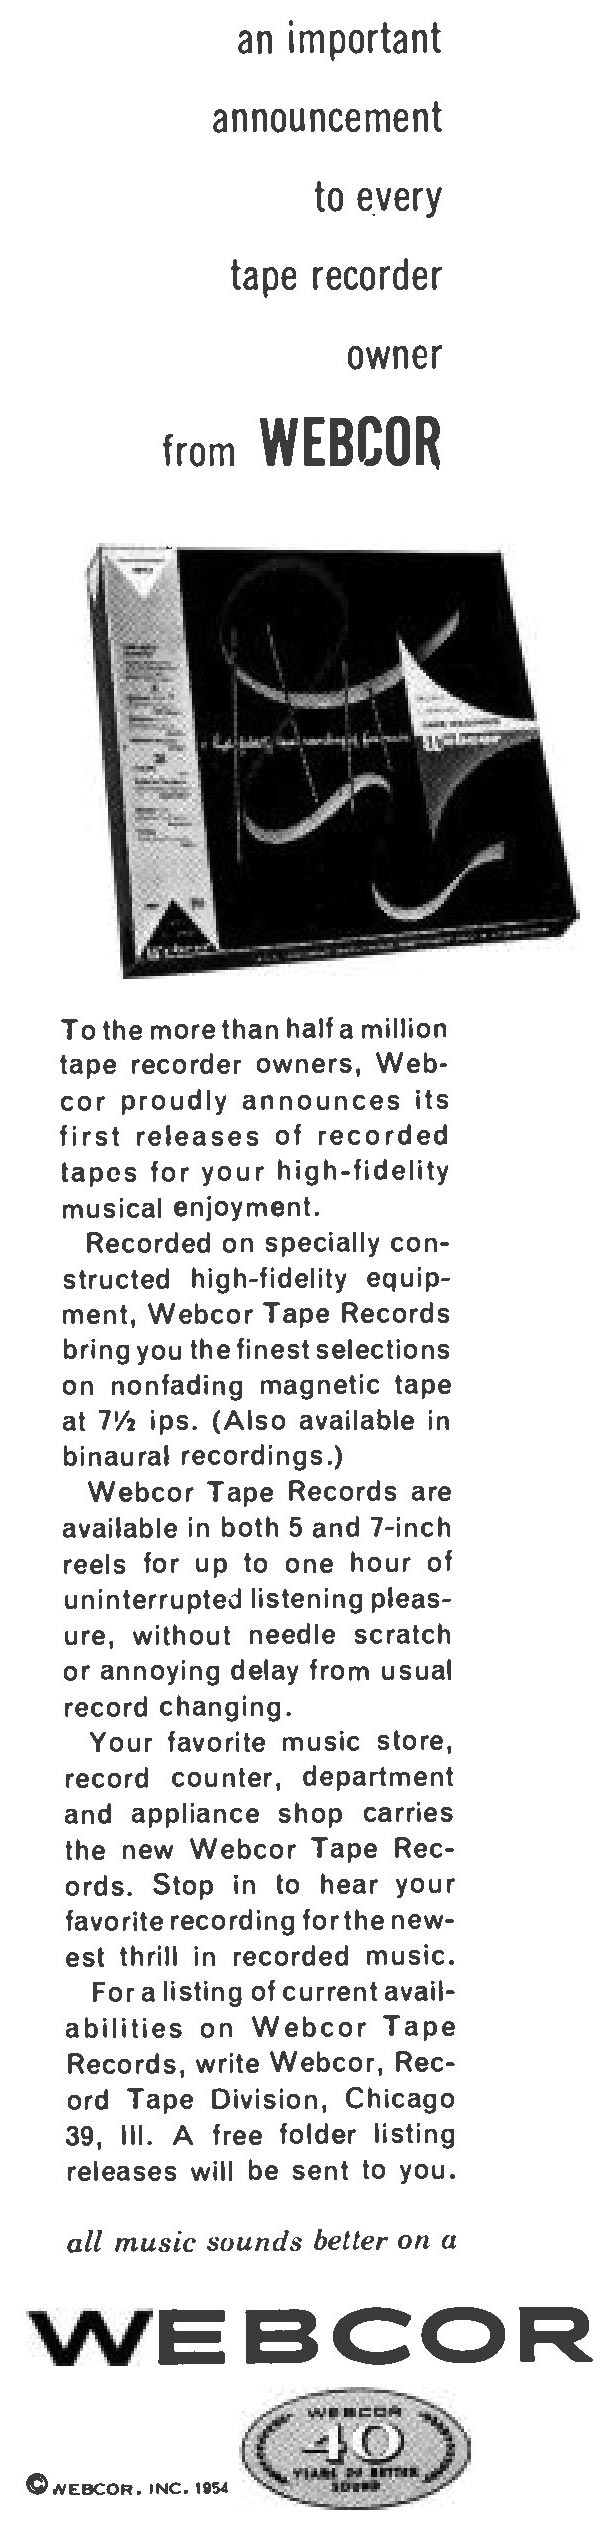 Webcor Tape Records ad - 1954